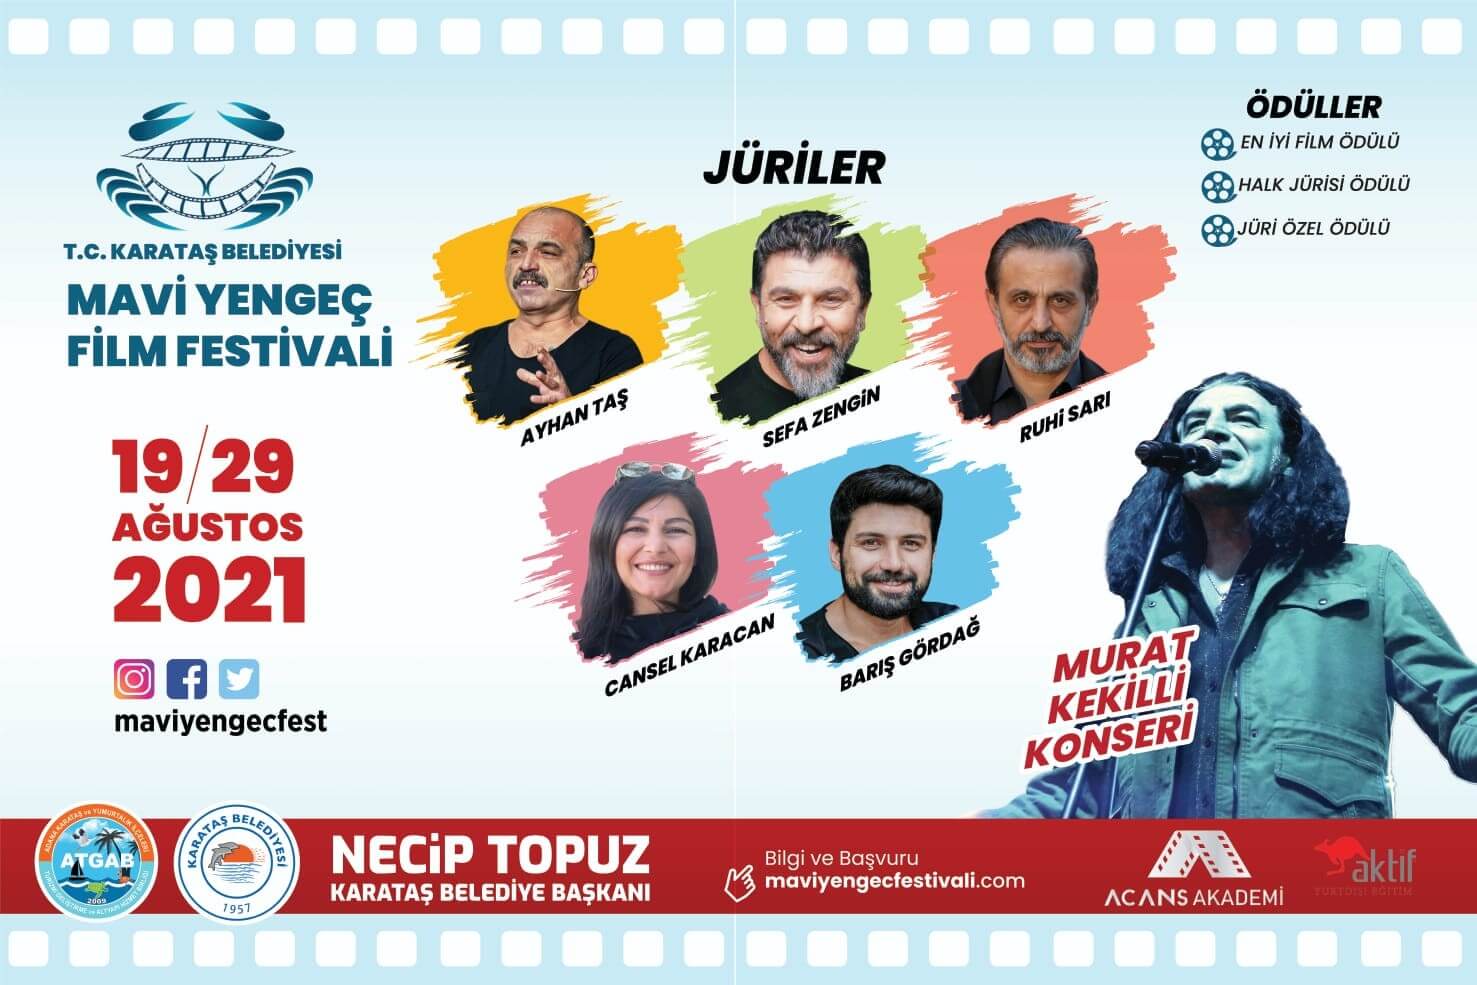 Adana’da 1. Ulusal Mavi Yengeç Kısa Film Festivali düzenlenecek